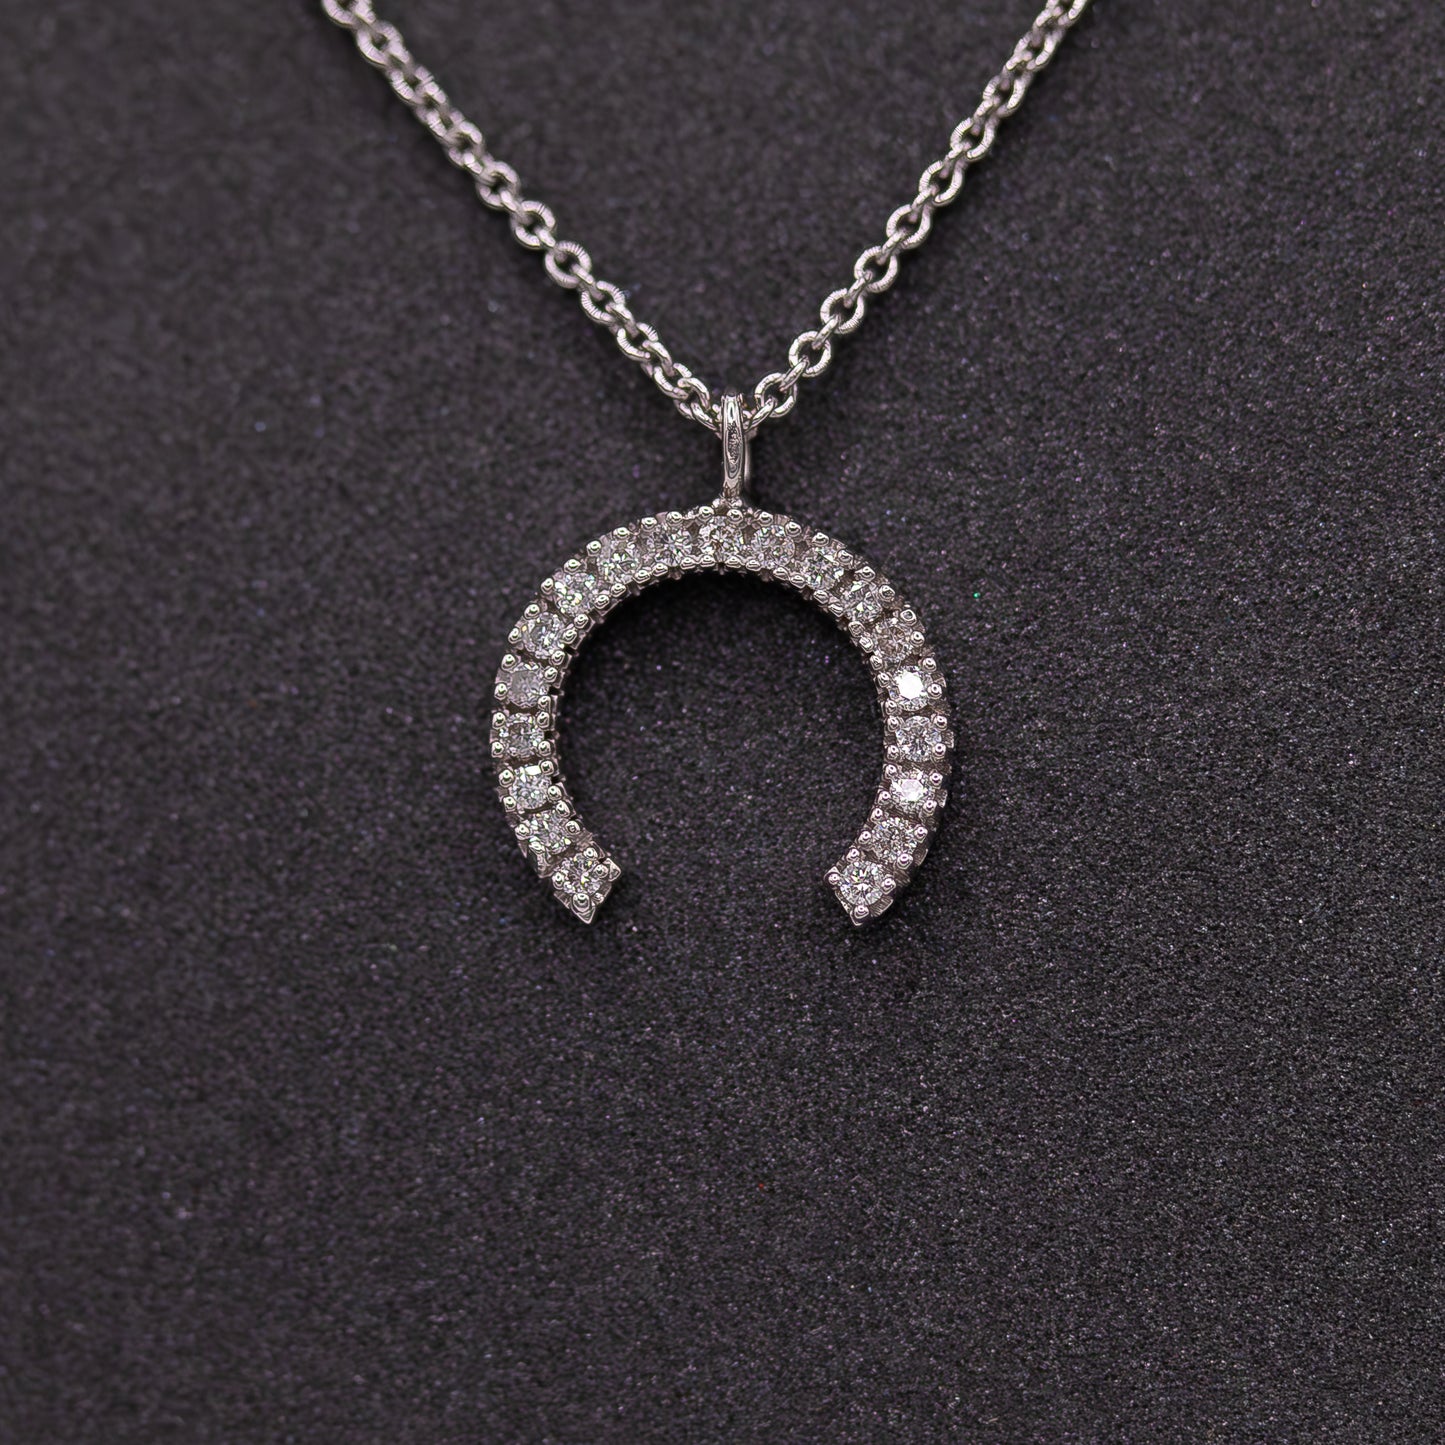 Horseshoe Necklace with Diamonds